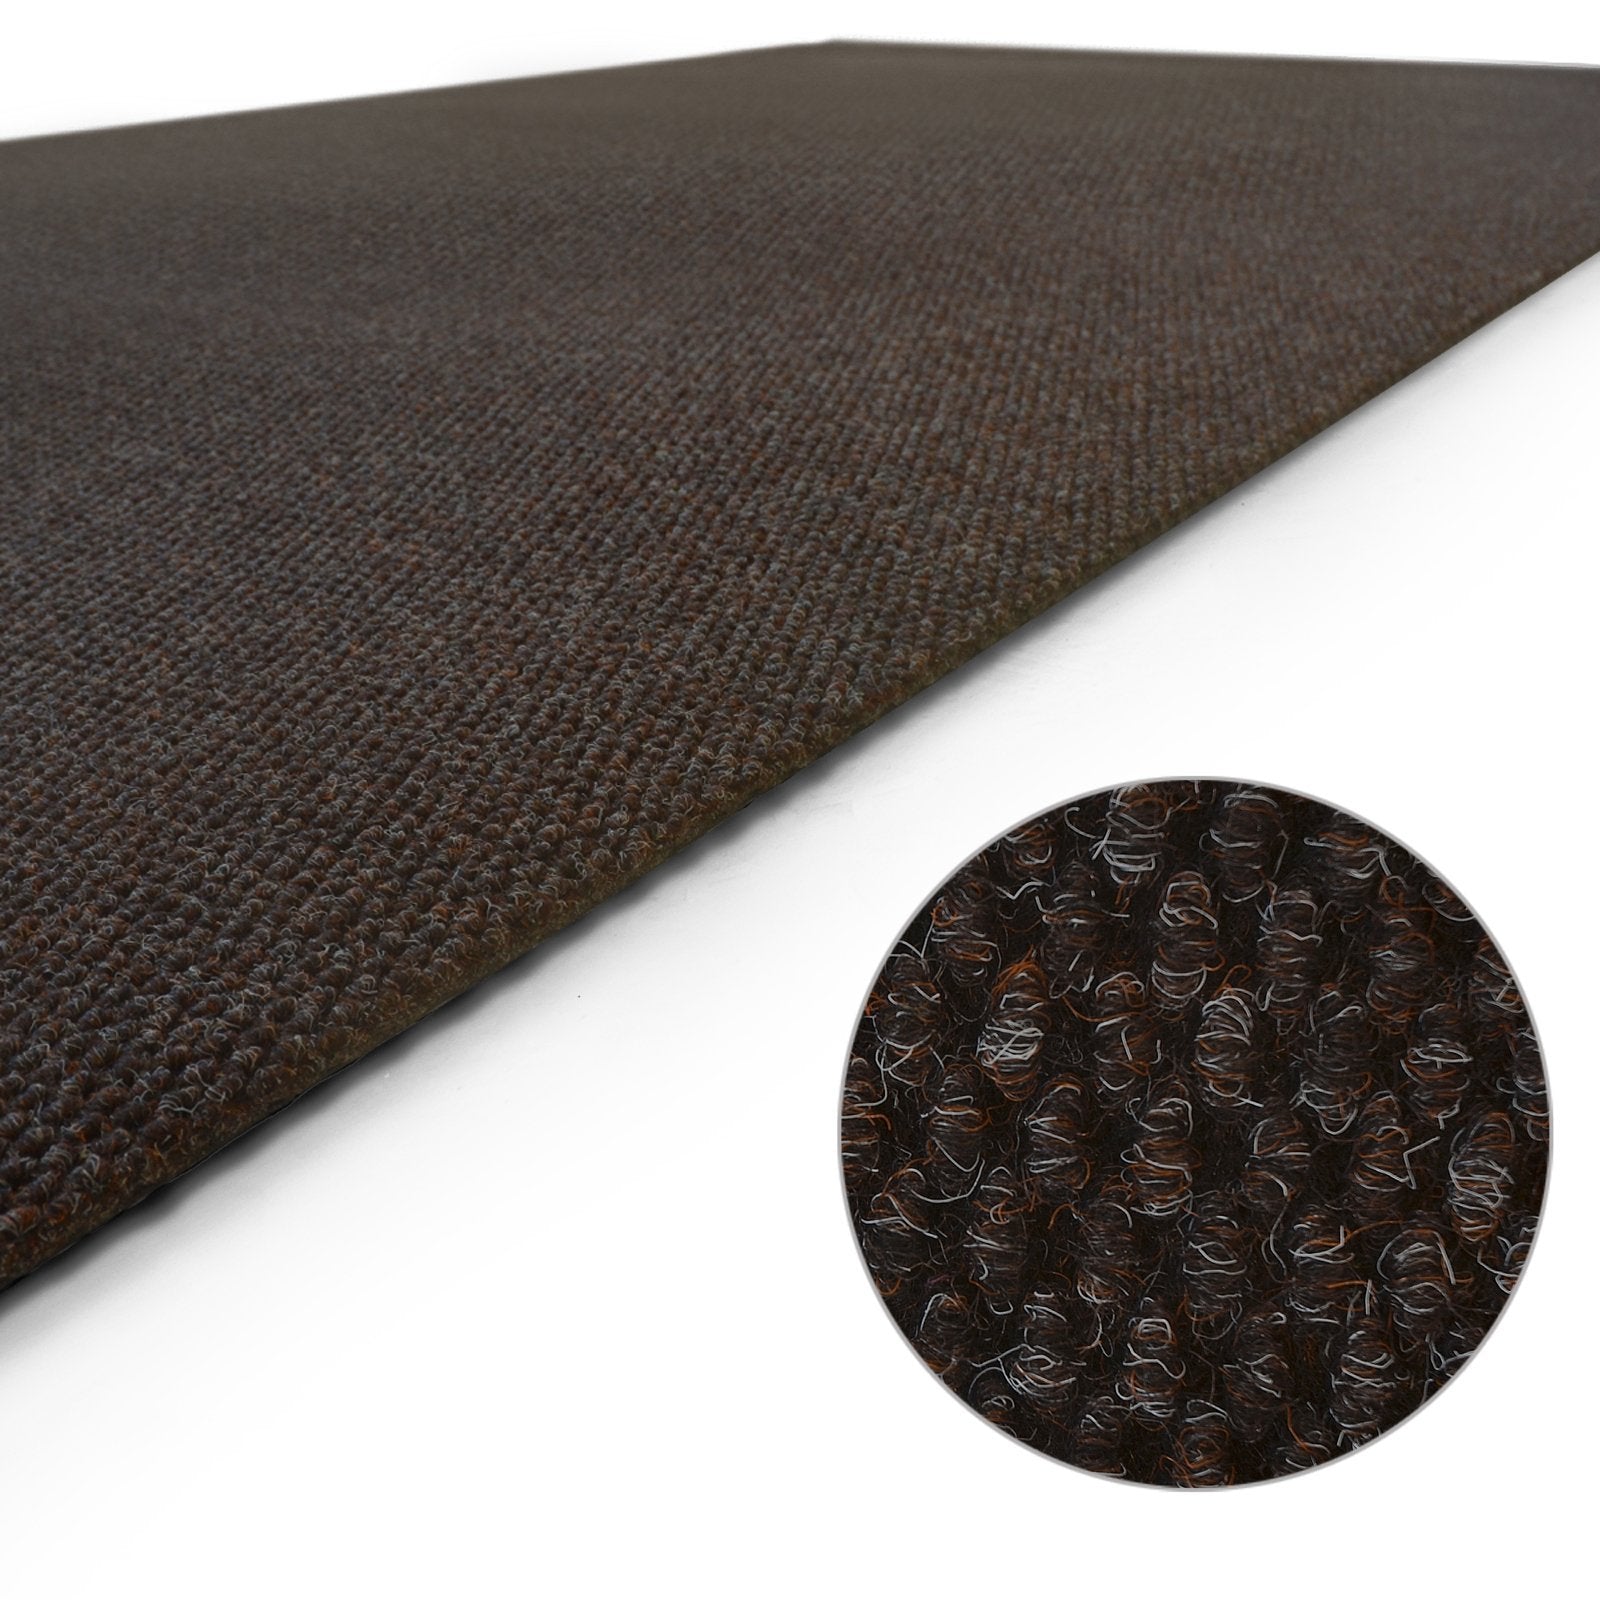 Strukturierte Fußmatte Gummi 120 cm breit 3 mm dick schwarz Gummi 80 x 120  cm